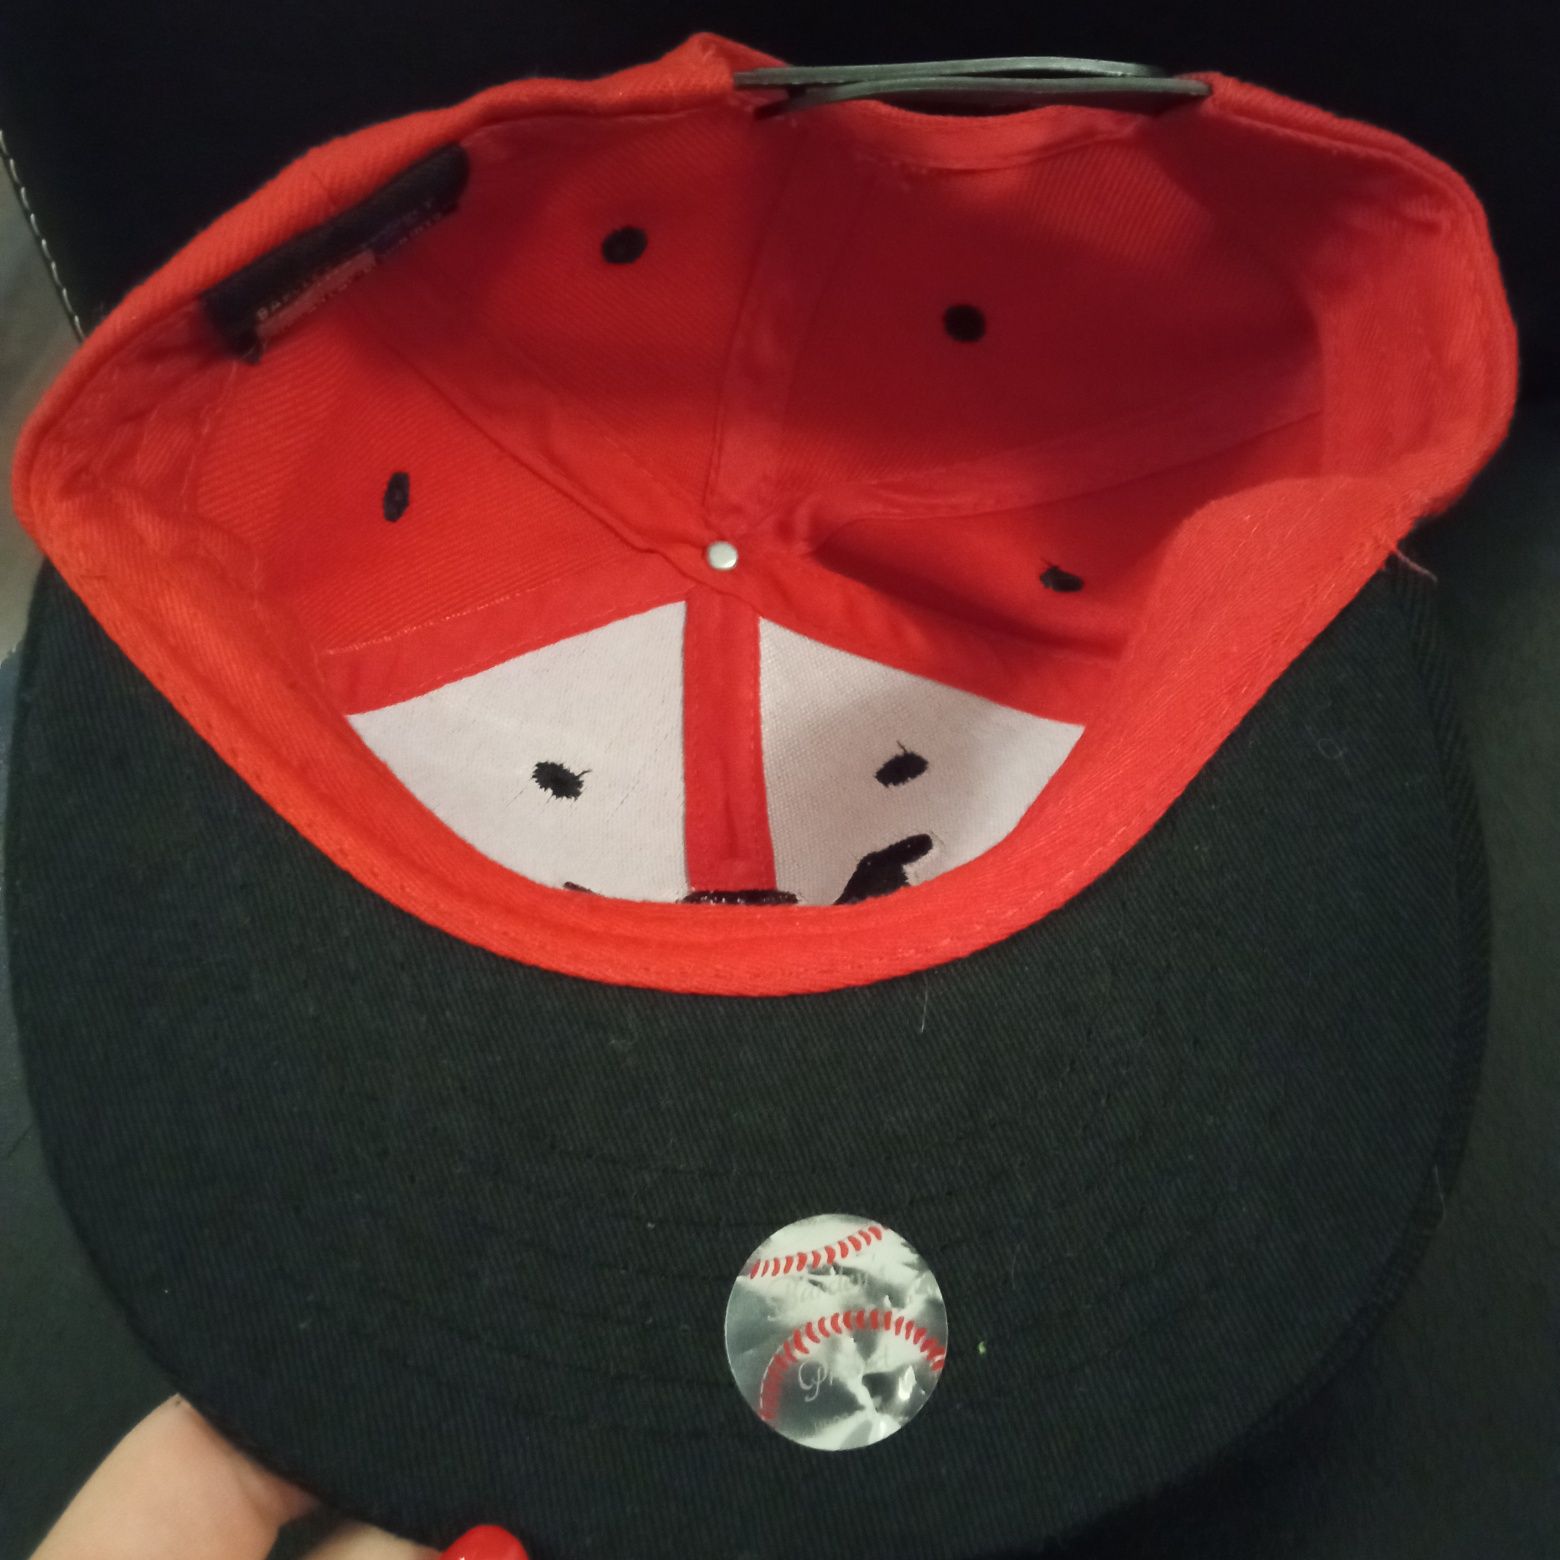 Barcley's czapka z daszkiem, naklejka holograficzna, czapka nieużywana